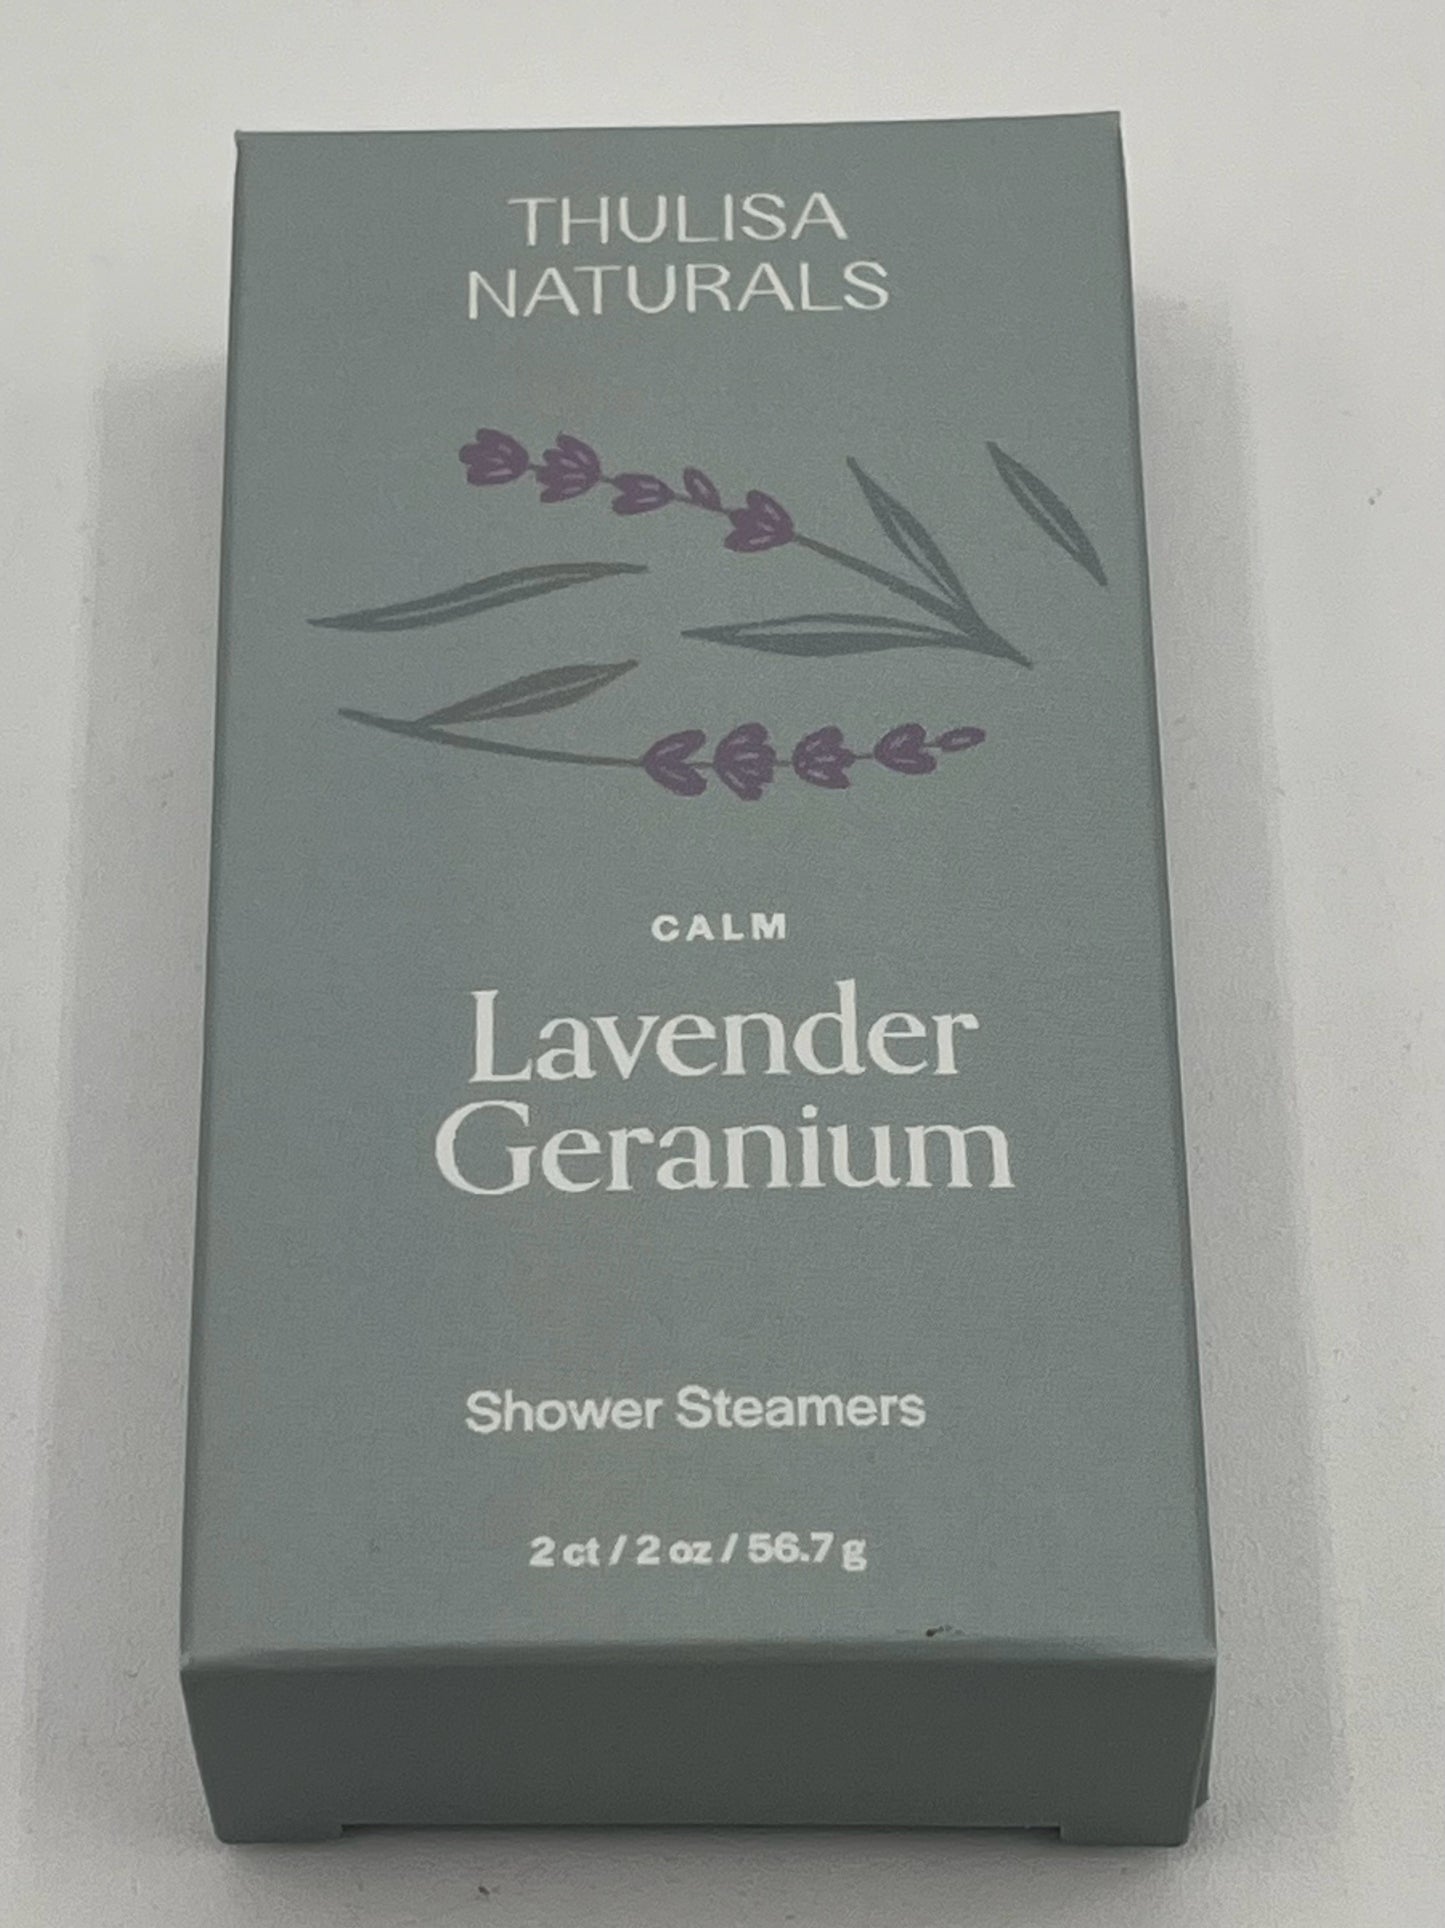 Lavender Geranium Shower Steamers